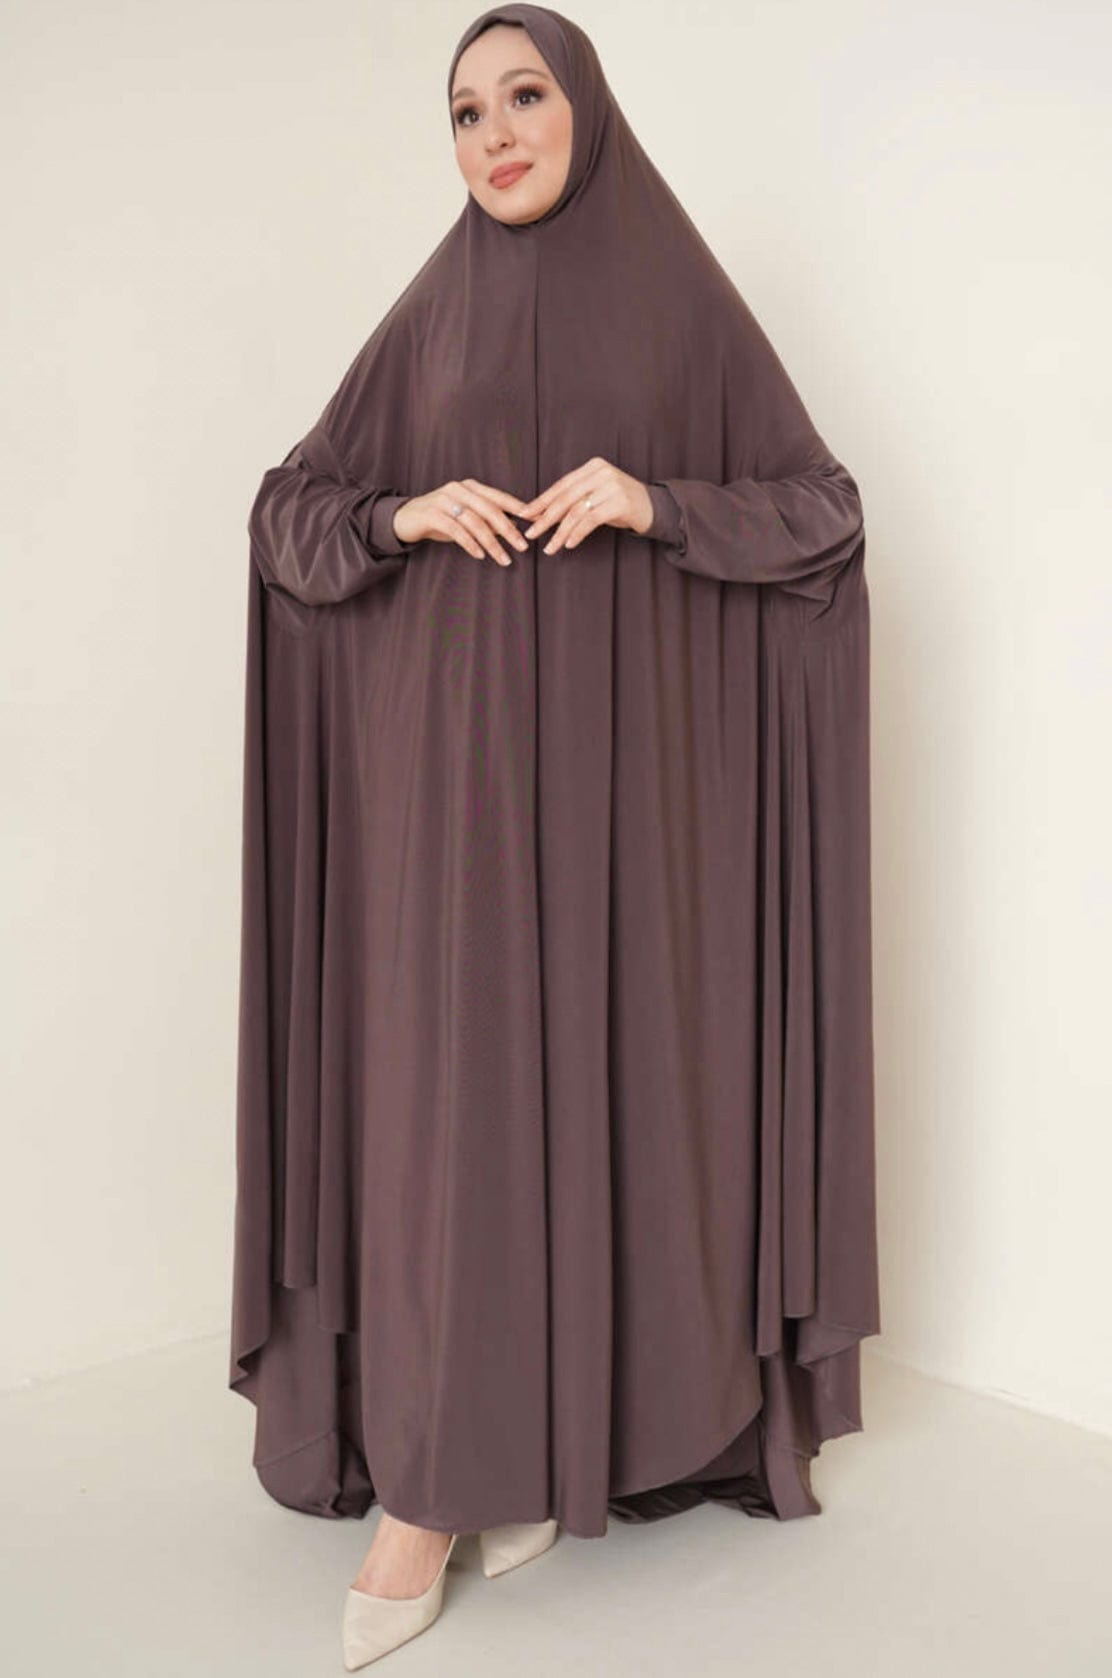 Deen Souvenir Abaya Premium Jersey in Braun Abaya Premium Jersey in Braun - Ein Must-Have für modebewusste Frauen